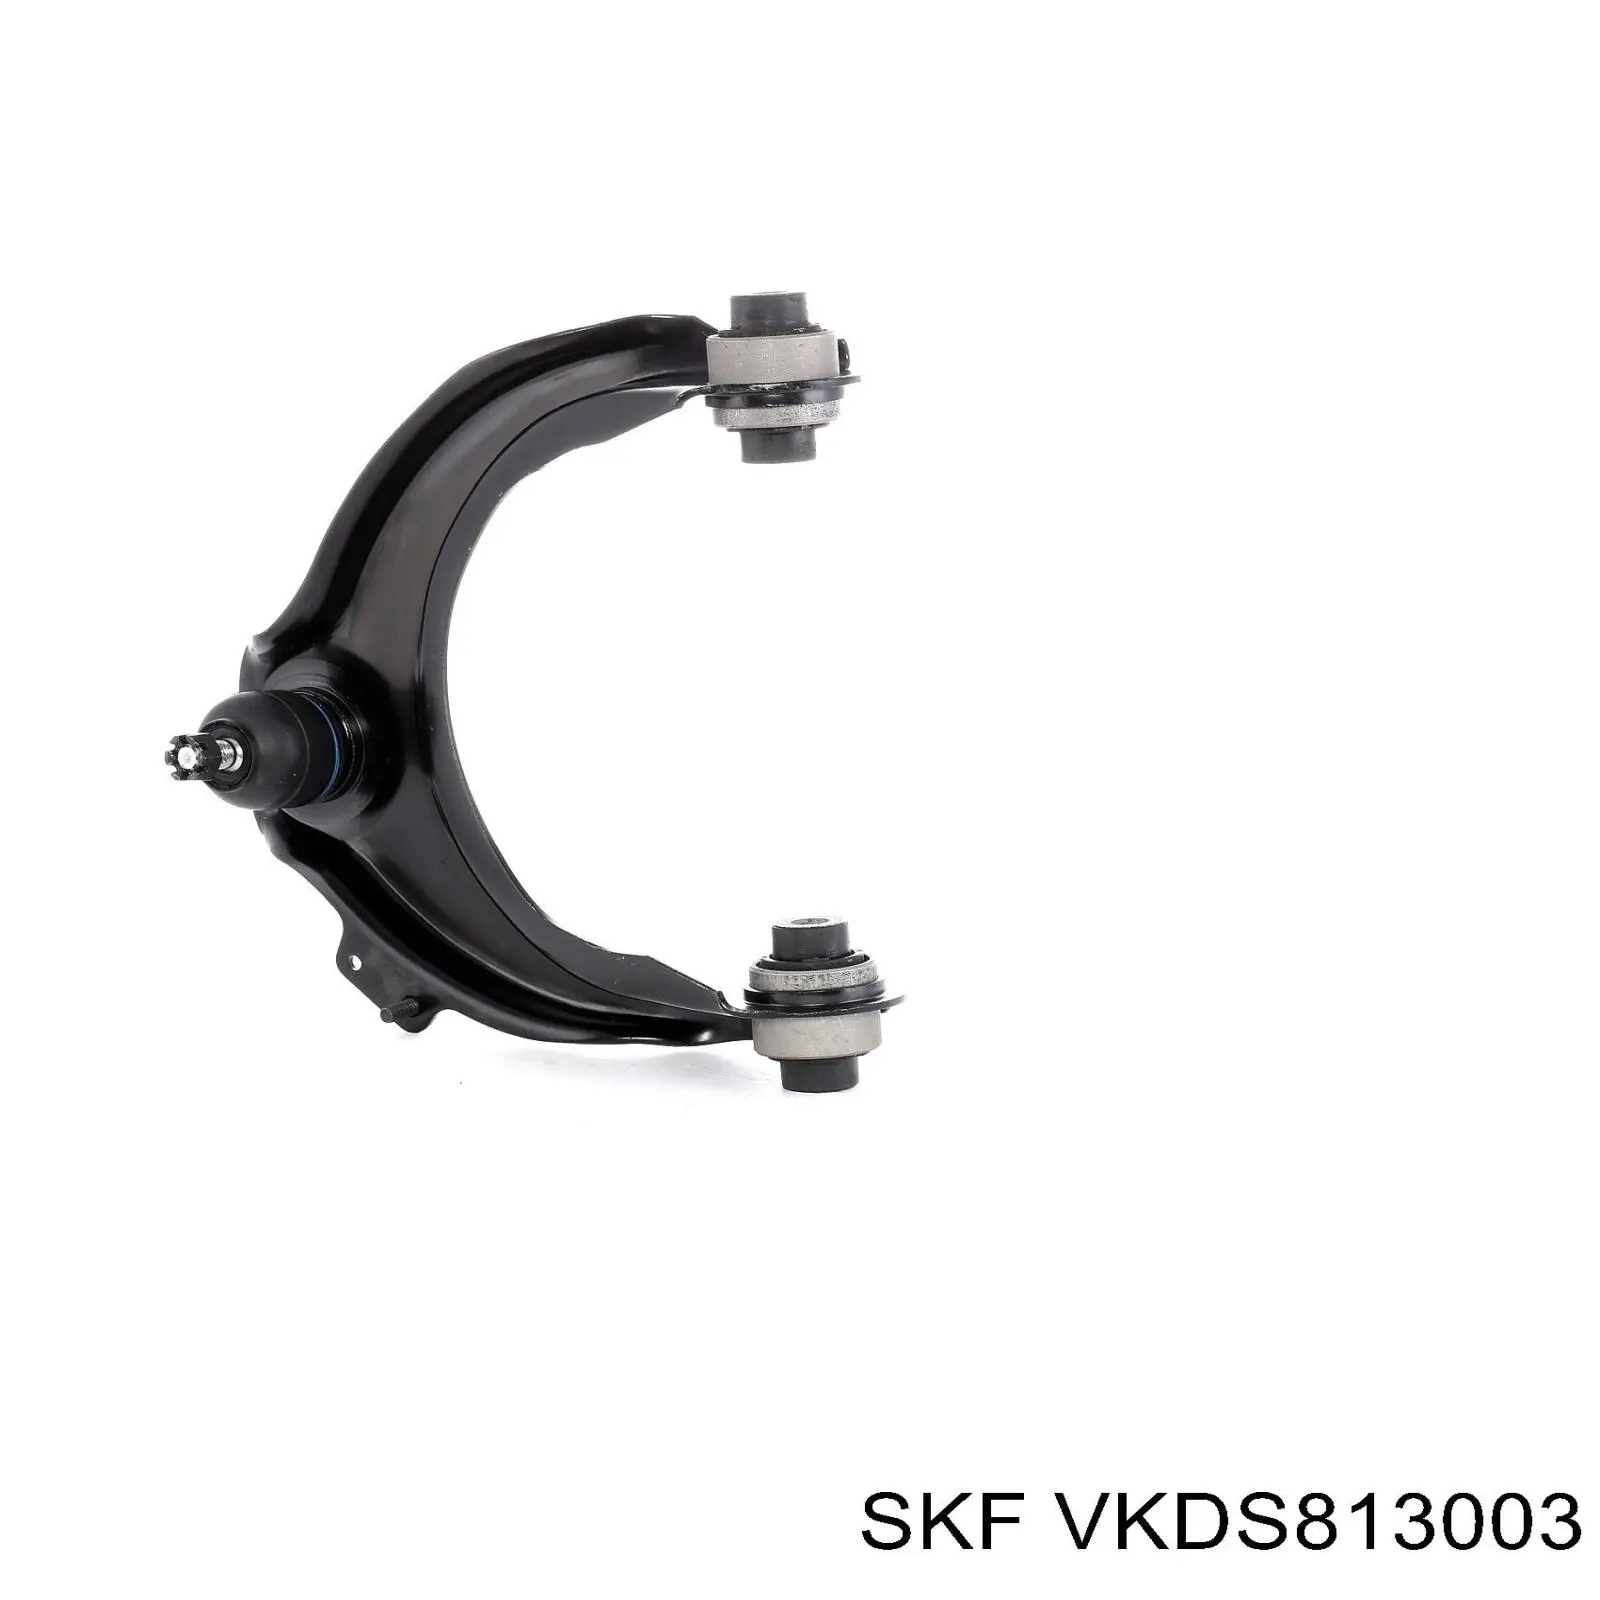 VKDS 813003 SKF rótula de suspensión